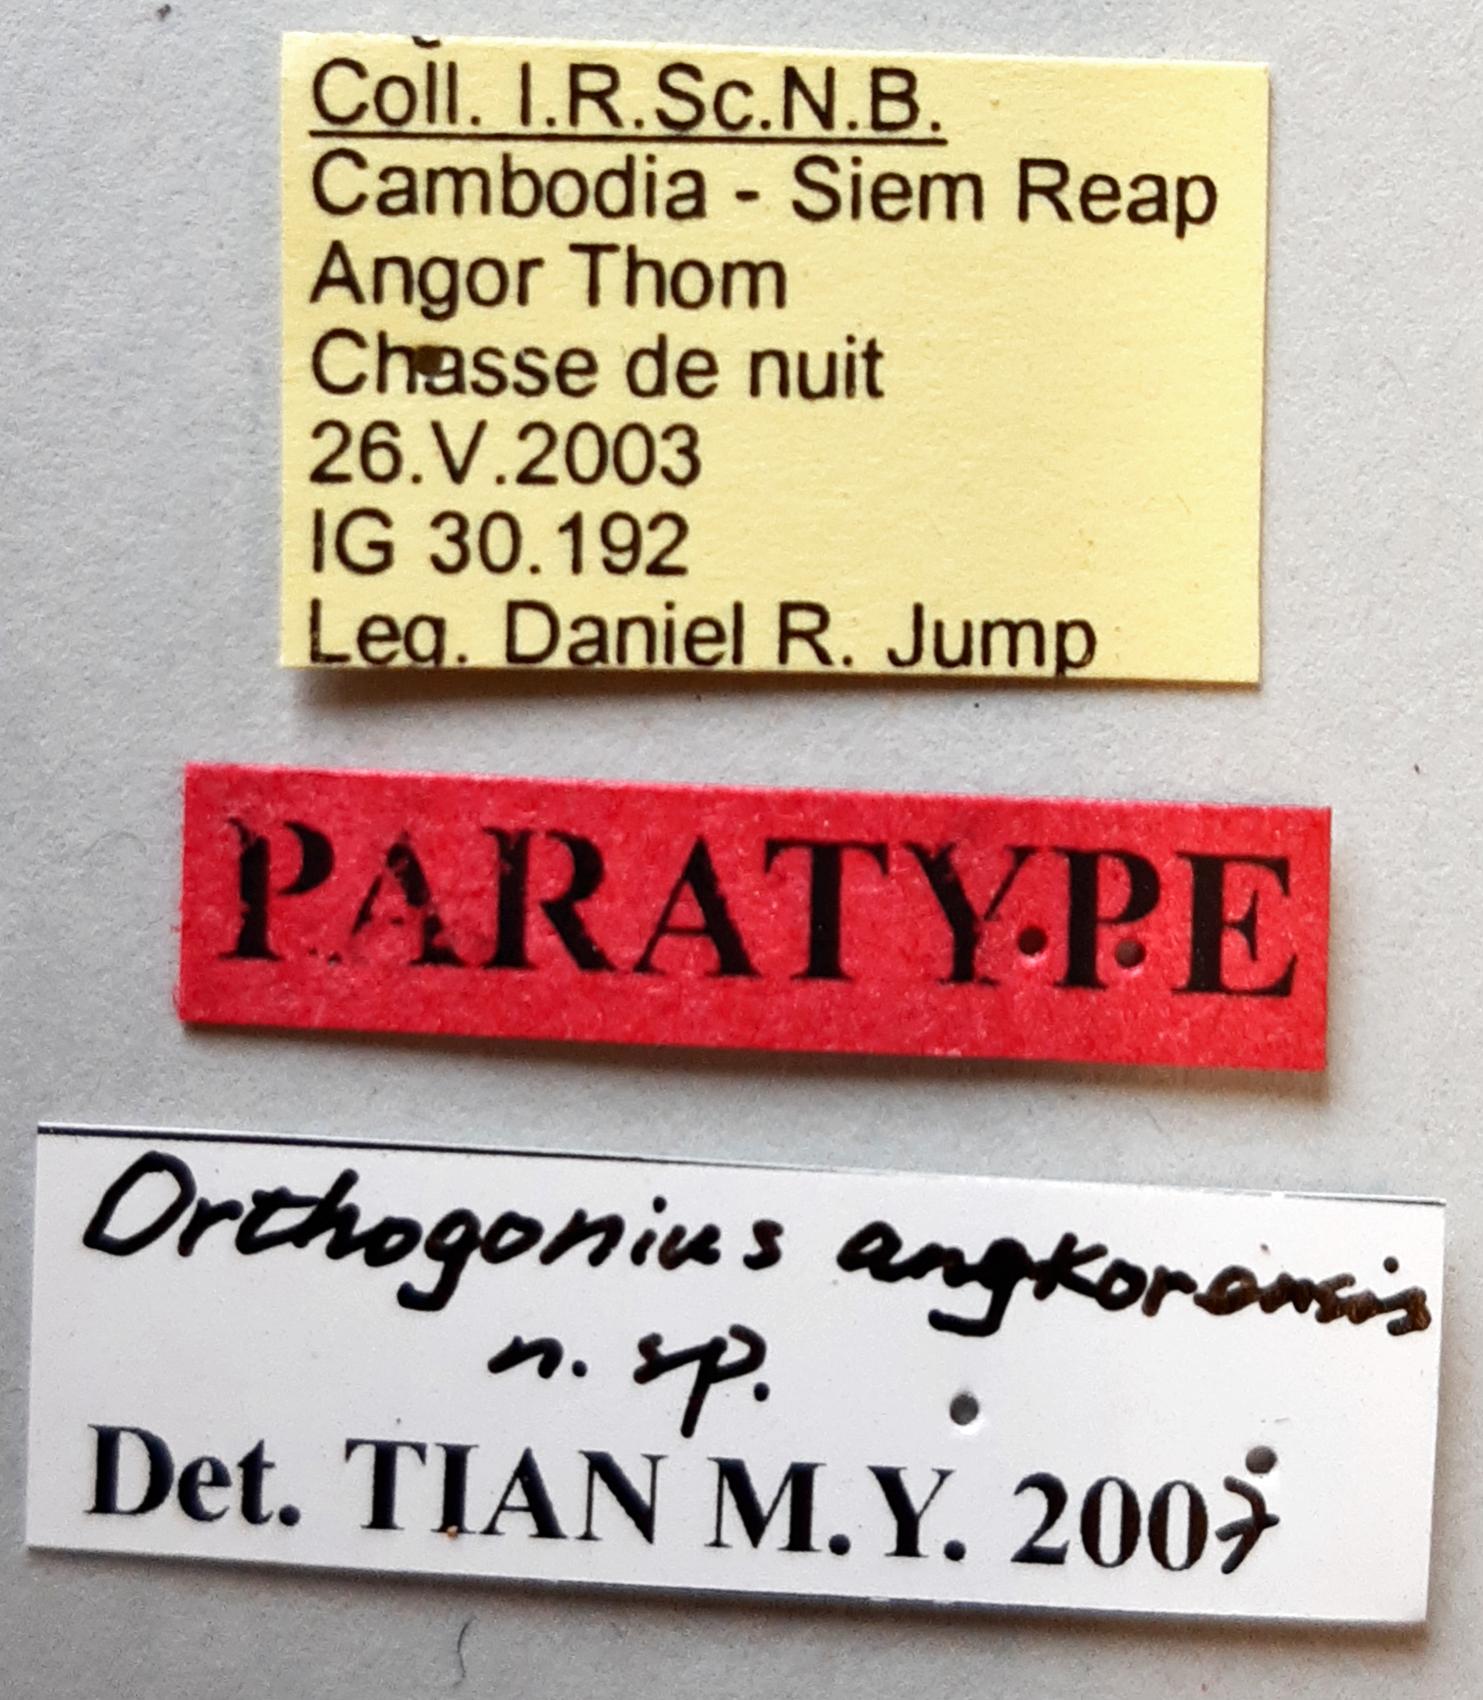 Orthogonius angkorensis Pt labels